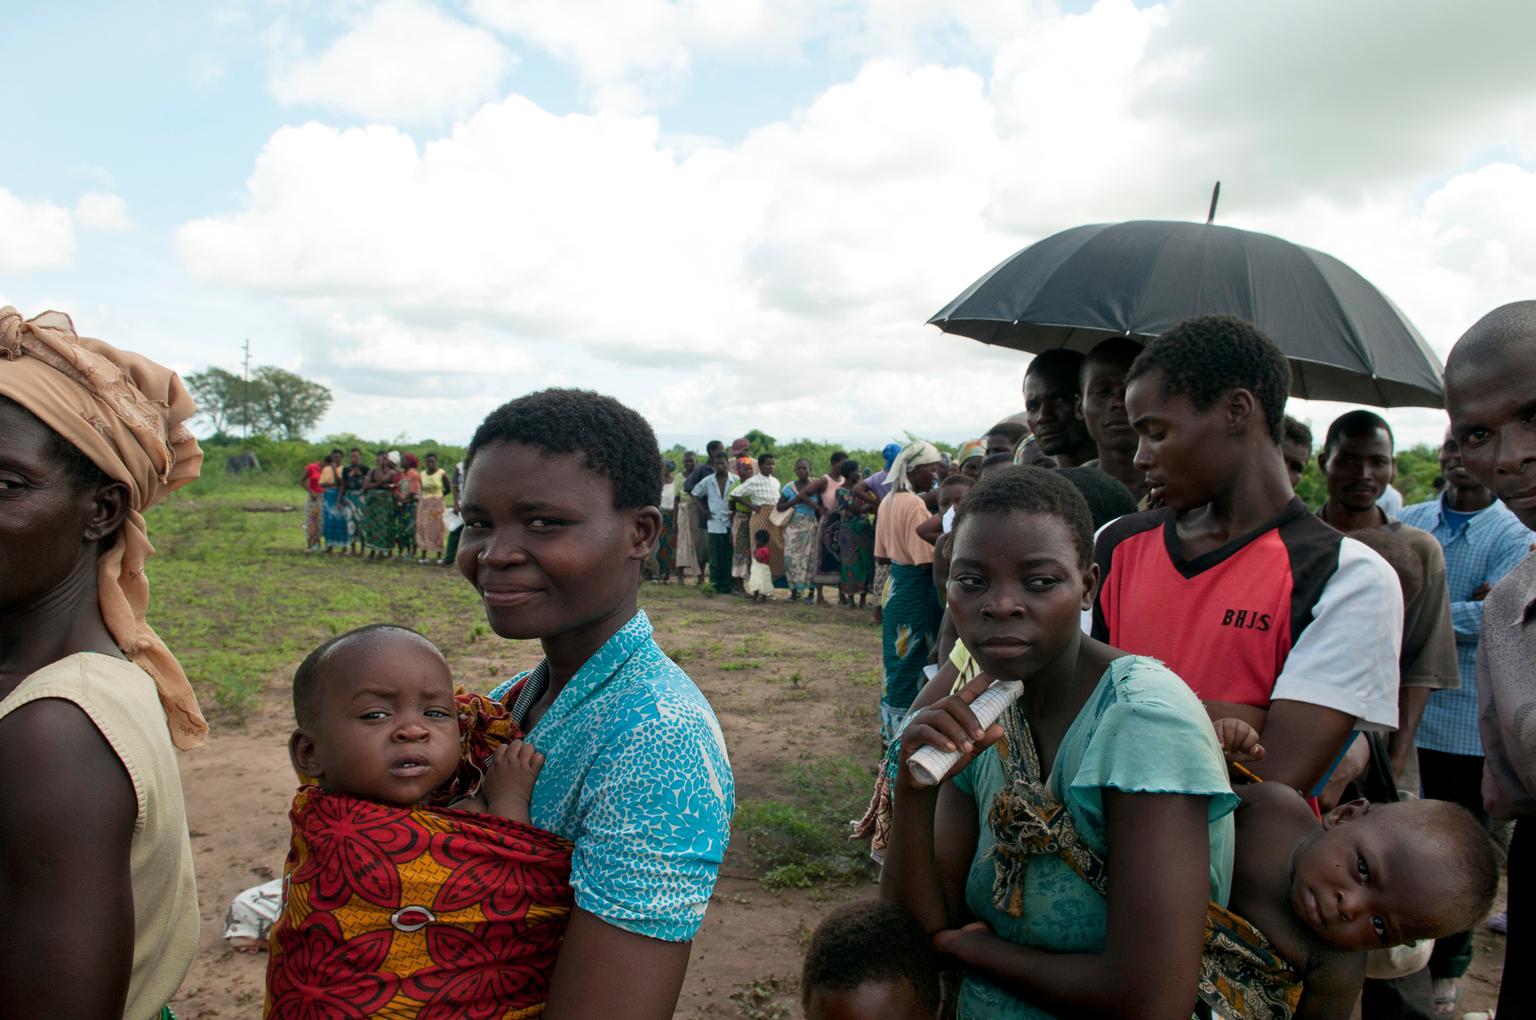 © UNICEF/NYHQ2015-0049/van de Merwe